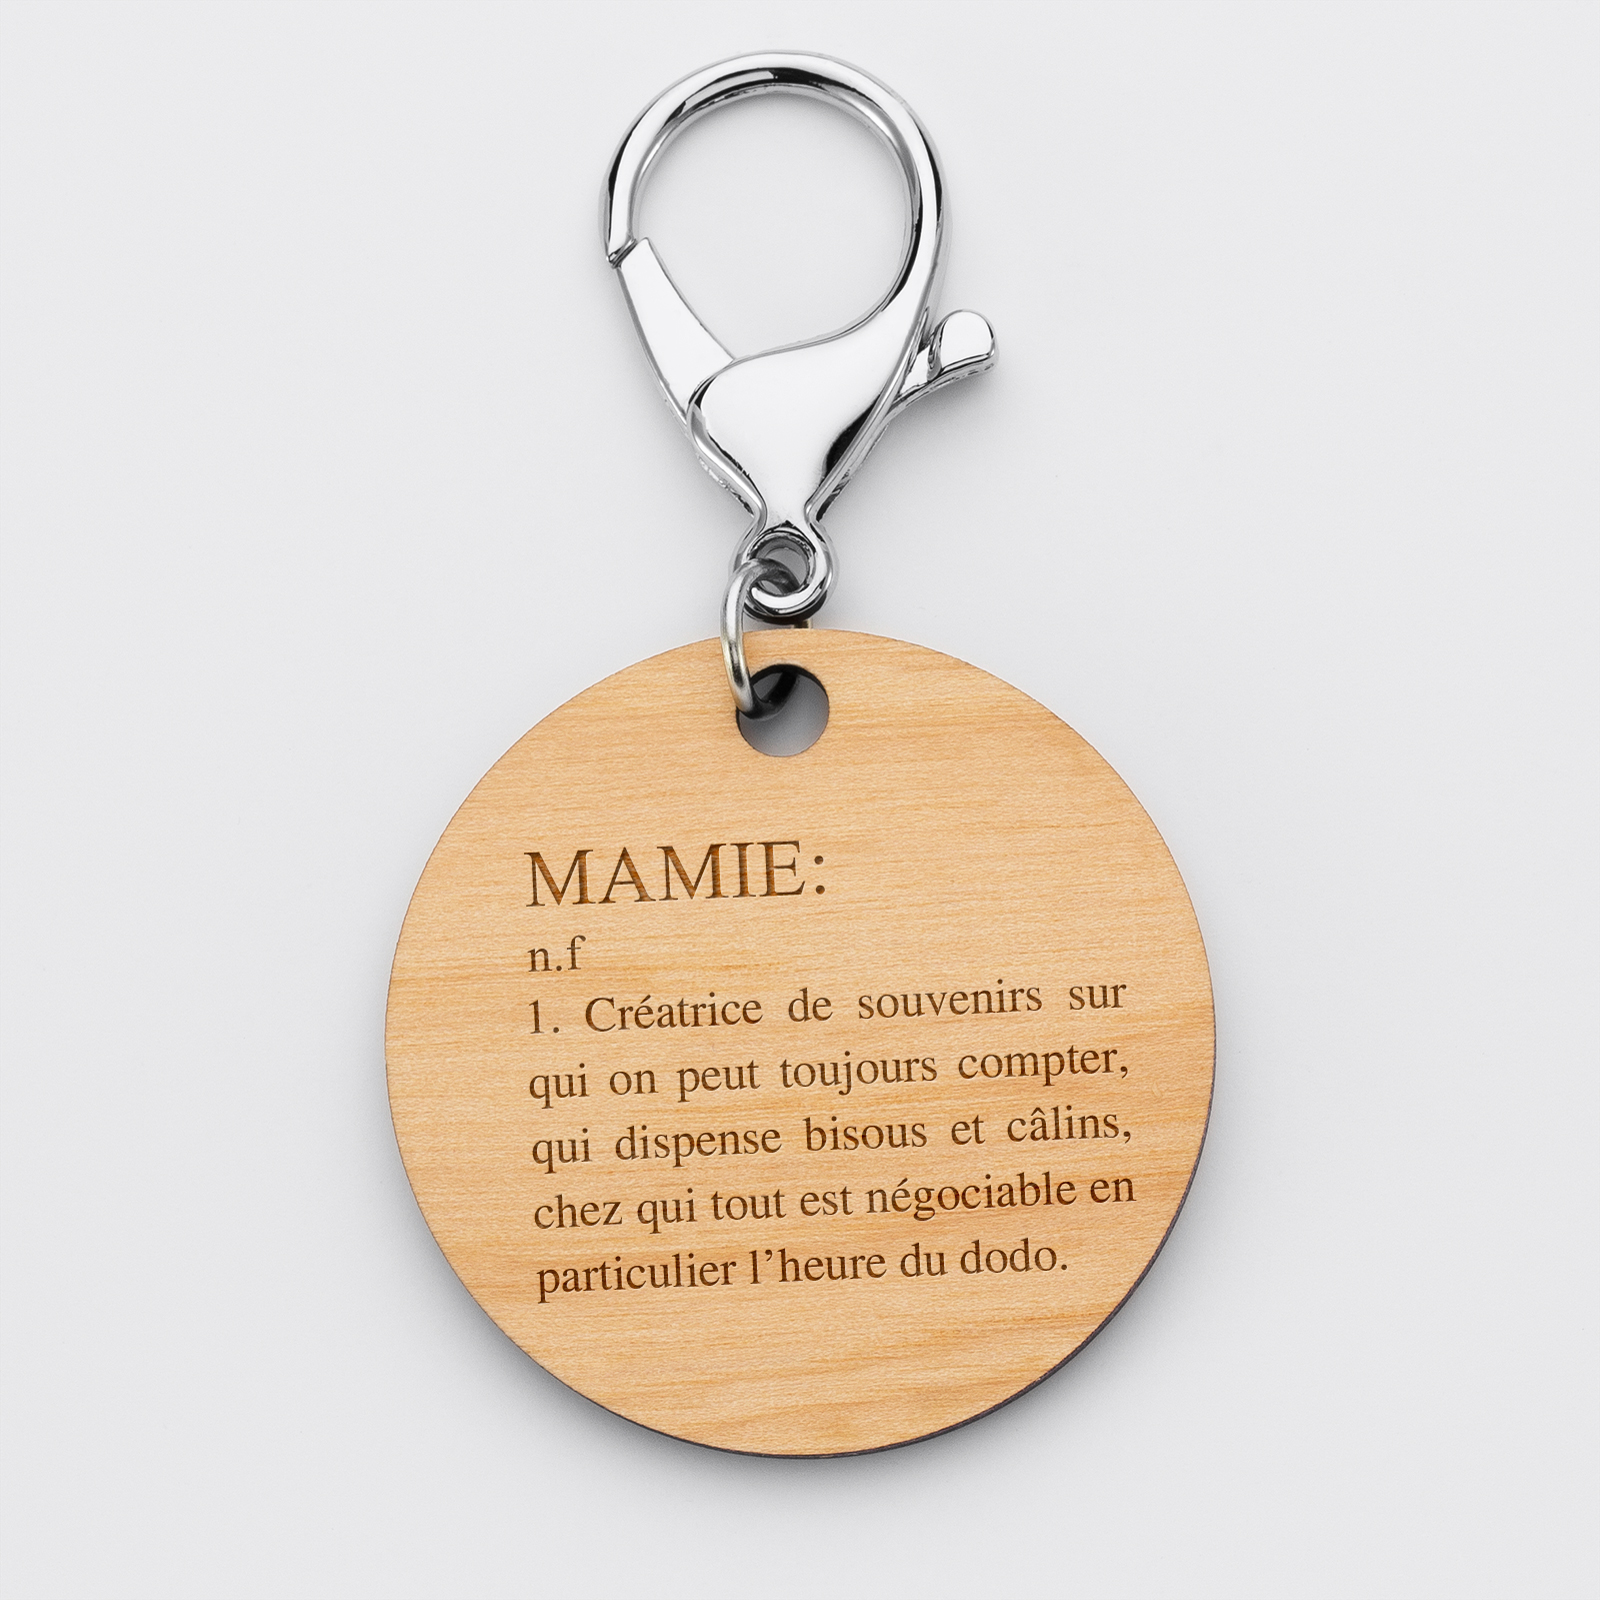 Porte-clés personnalisé gravé bois médaille ronde 50 mm - Edition spéciale "Définition Mamie" - recto 1